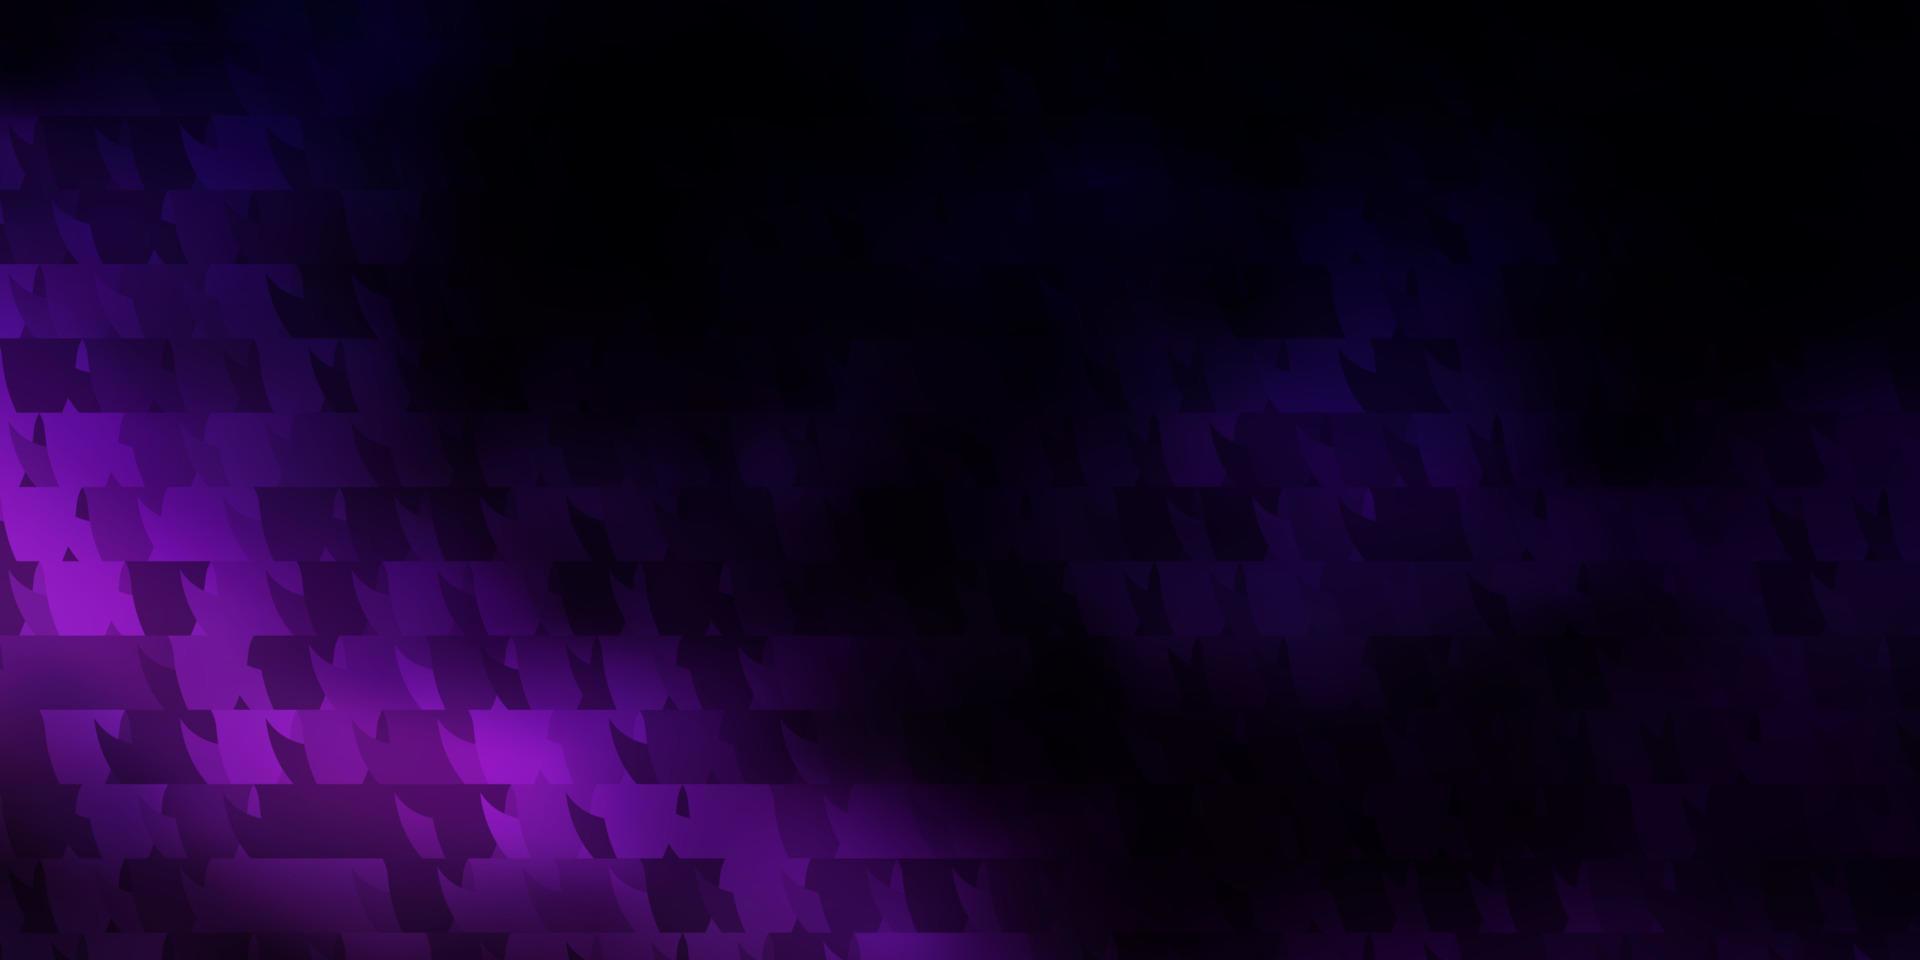 sfondo vettoriale viola scuro con stile poligonale.